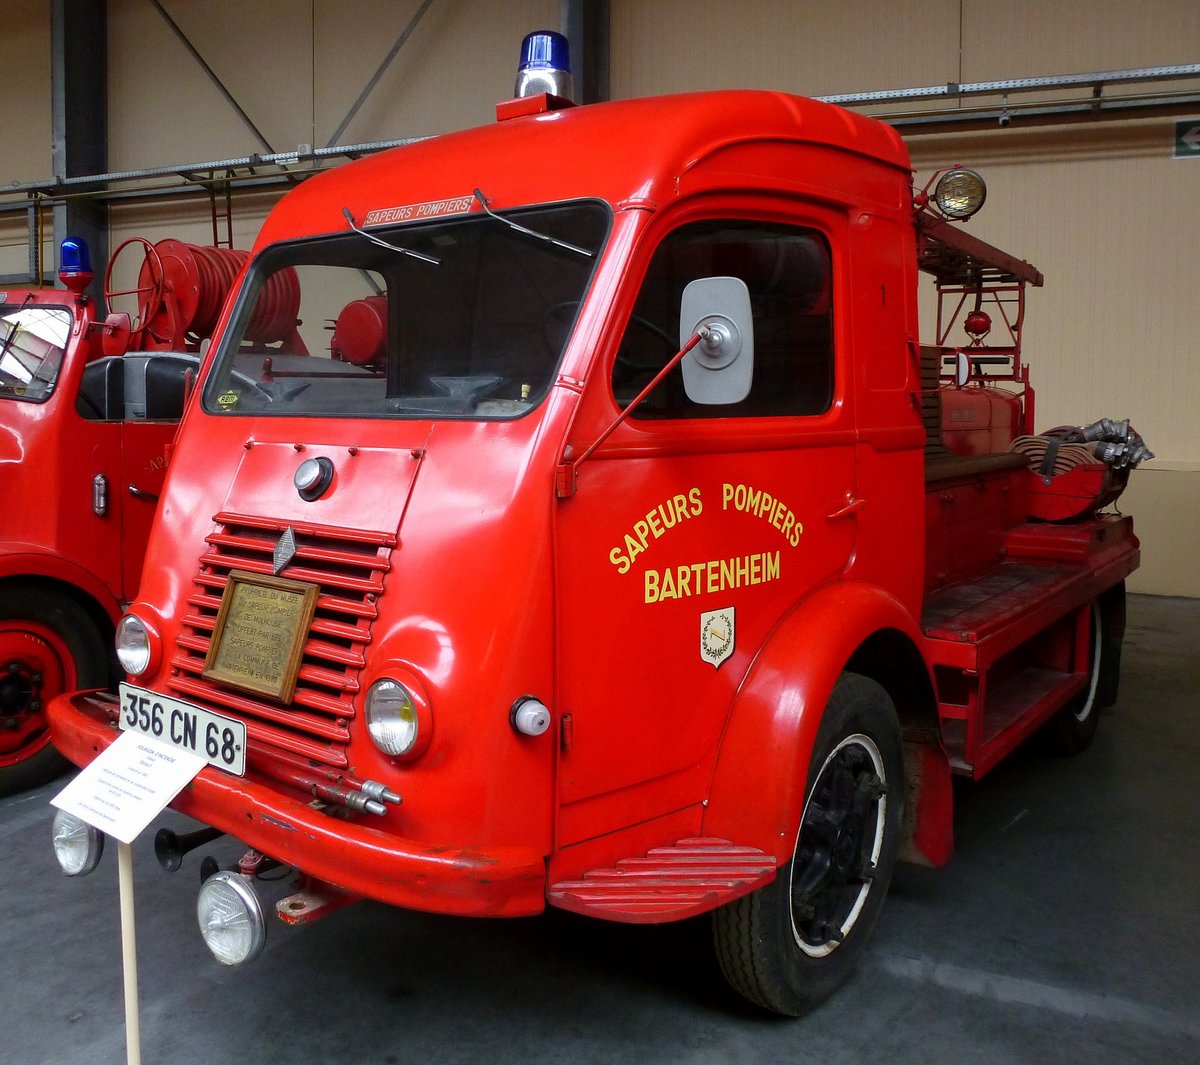 Renault, Feuerwehrmannschaftswagen mit 3000 Liter Lschmitteltank, gebaut 1964, Feuerwehrmuseum Vieux-Ferrette, Mai 2016